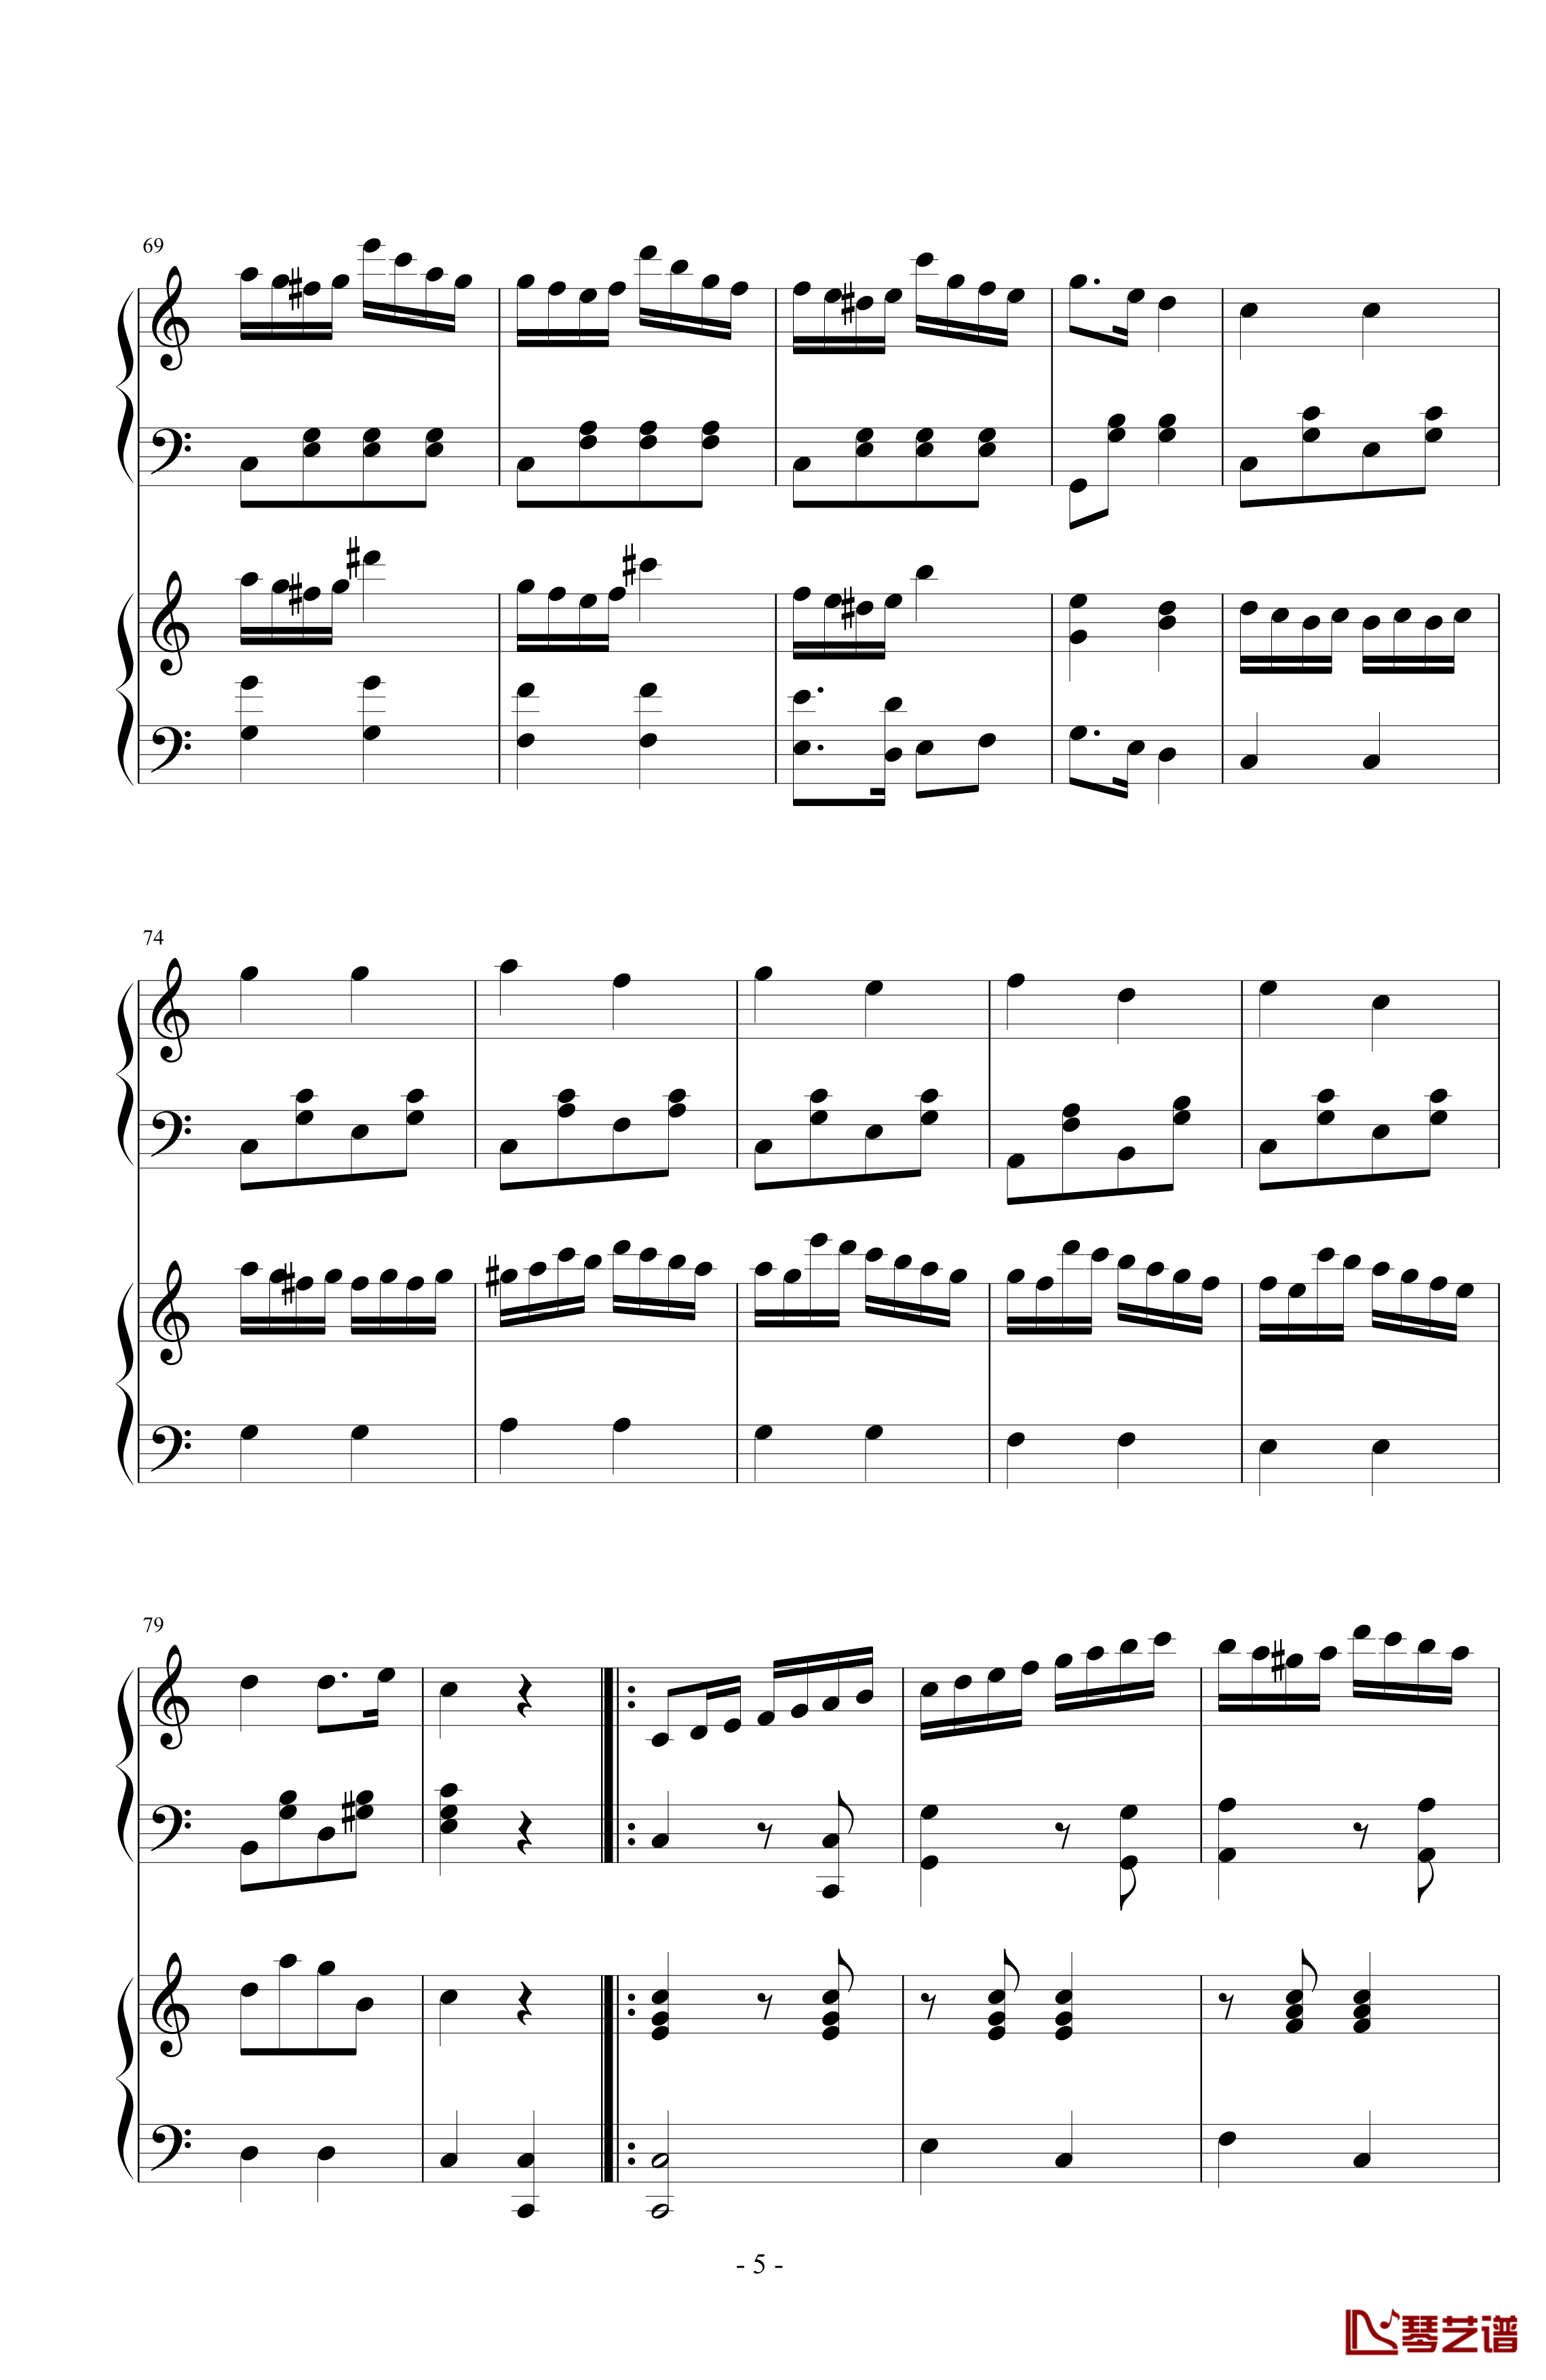 小星星简易变奏曲钢琴谱-双钢琴-莫扎特5